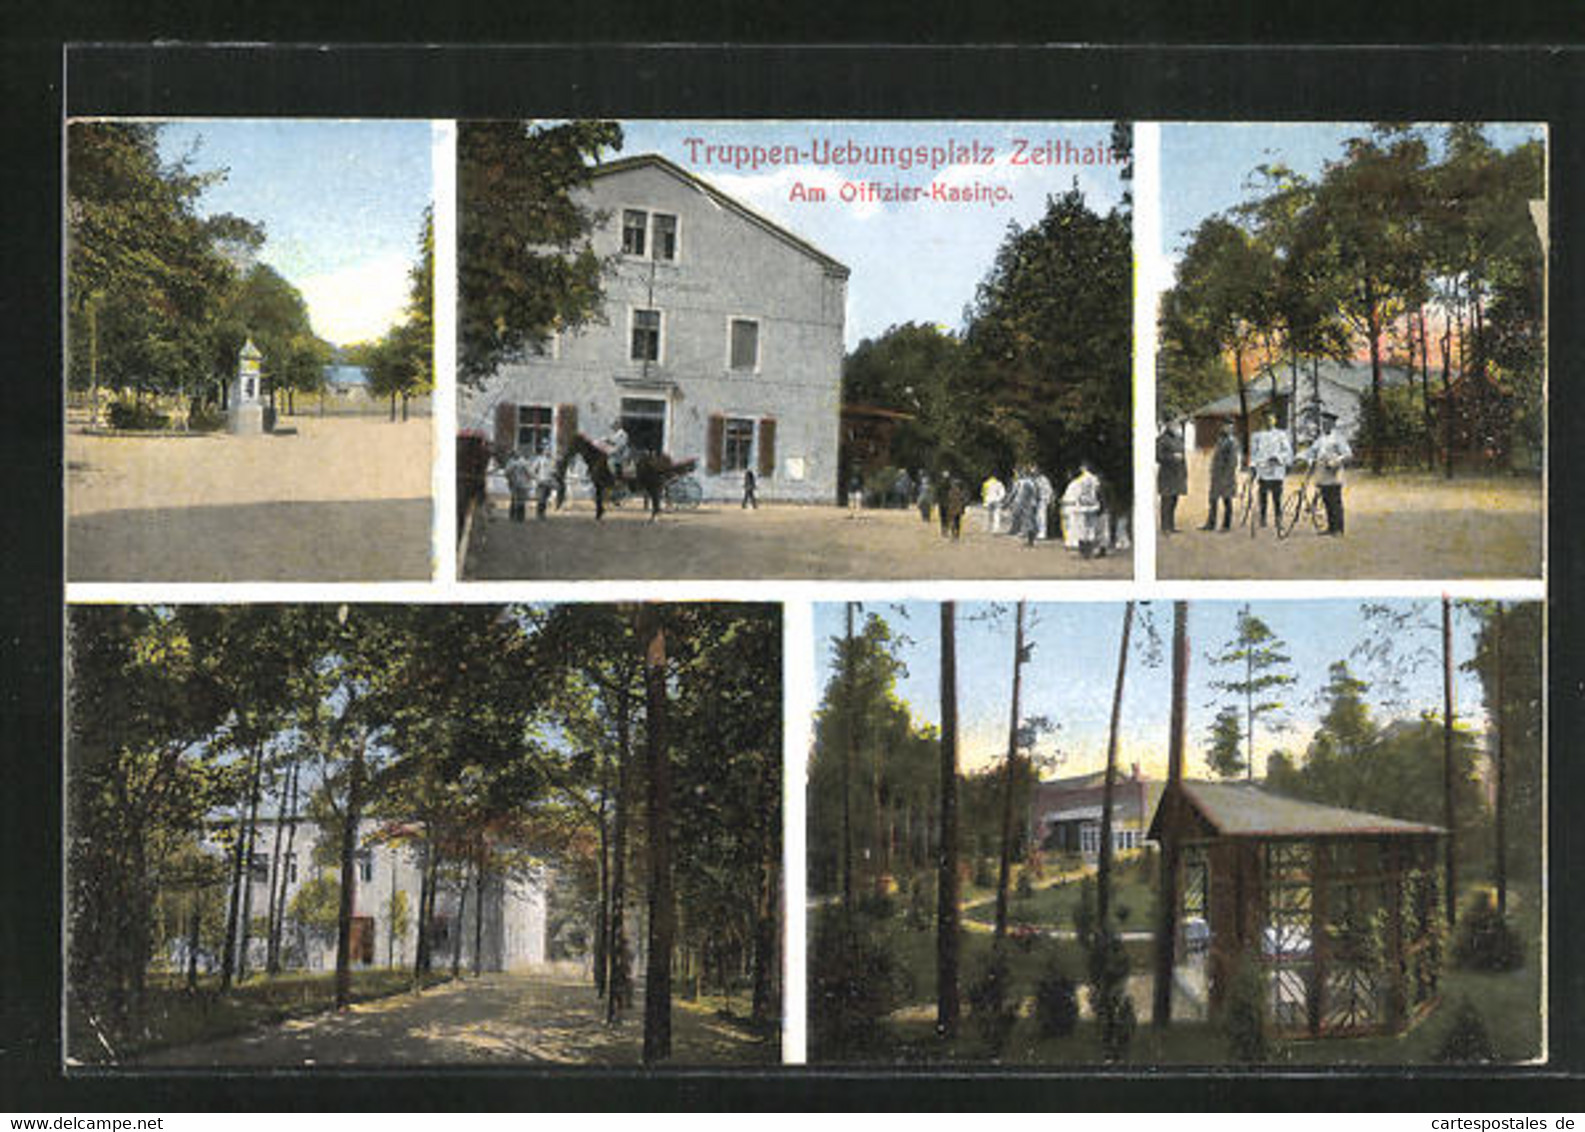 AK Zeithain, Truppen-Übungsplatz, Am Offizier-Kasino, Soldaten Mit Fahrrädern, Pavillon - Zeithain